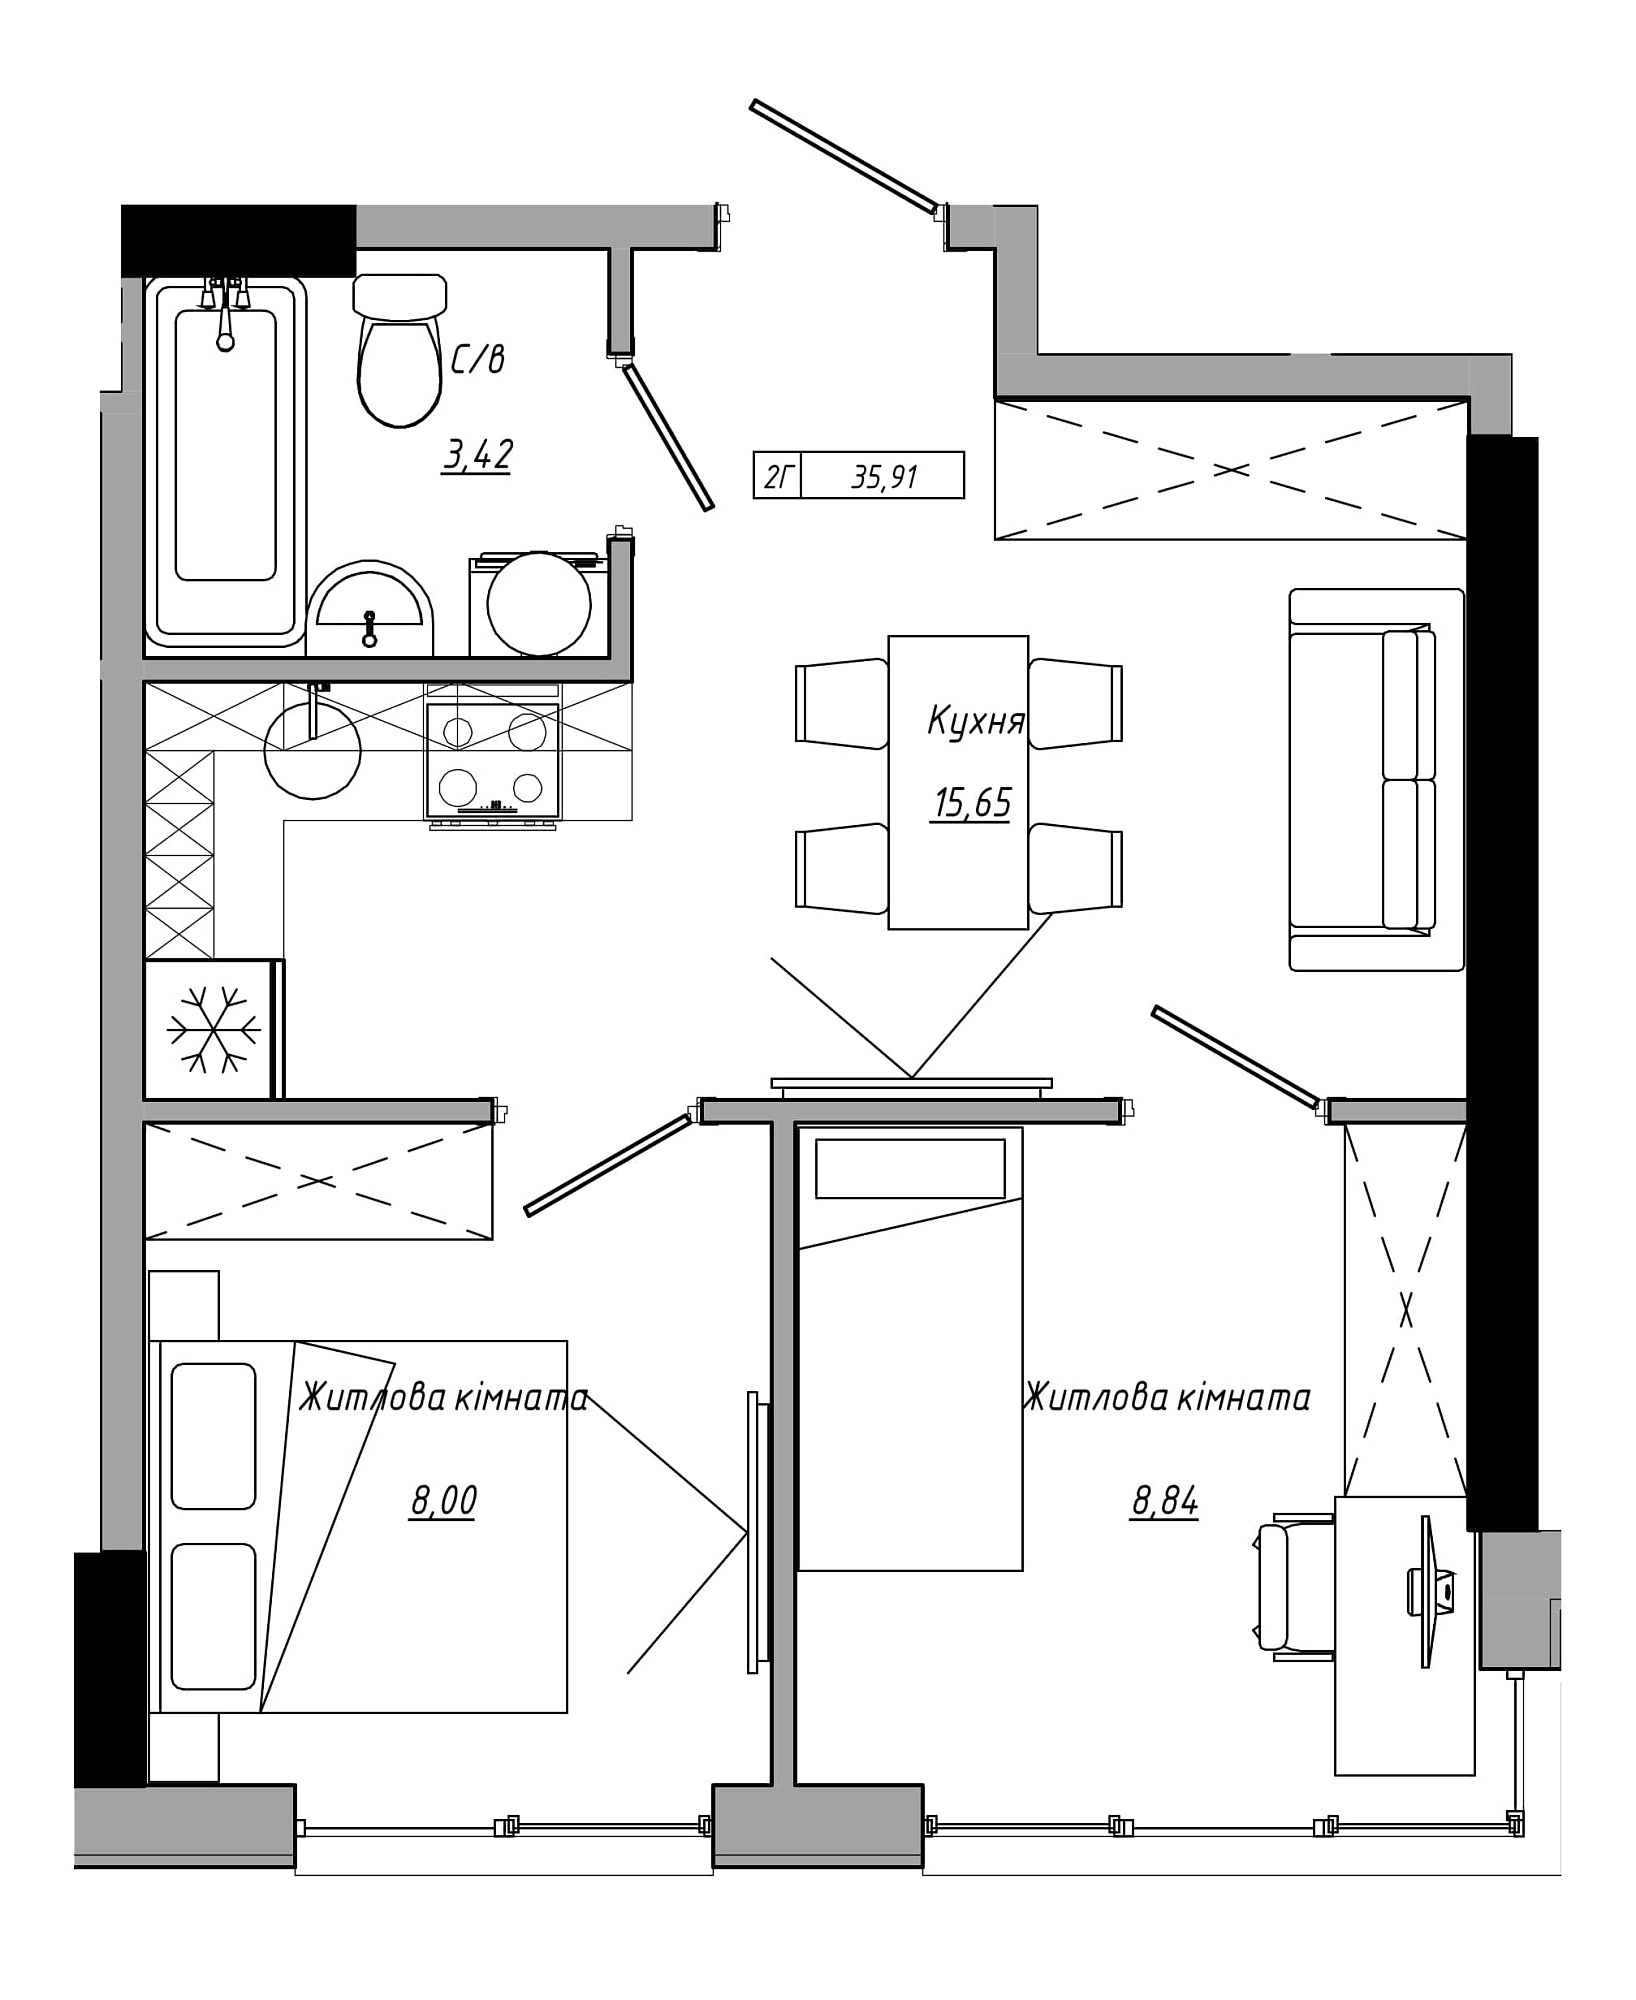 Планування 2-к квартира площею 35.91м2, AB-21-05/00019.